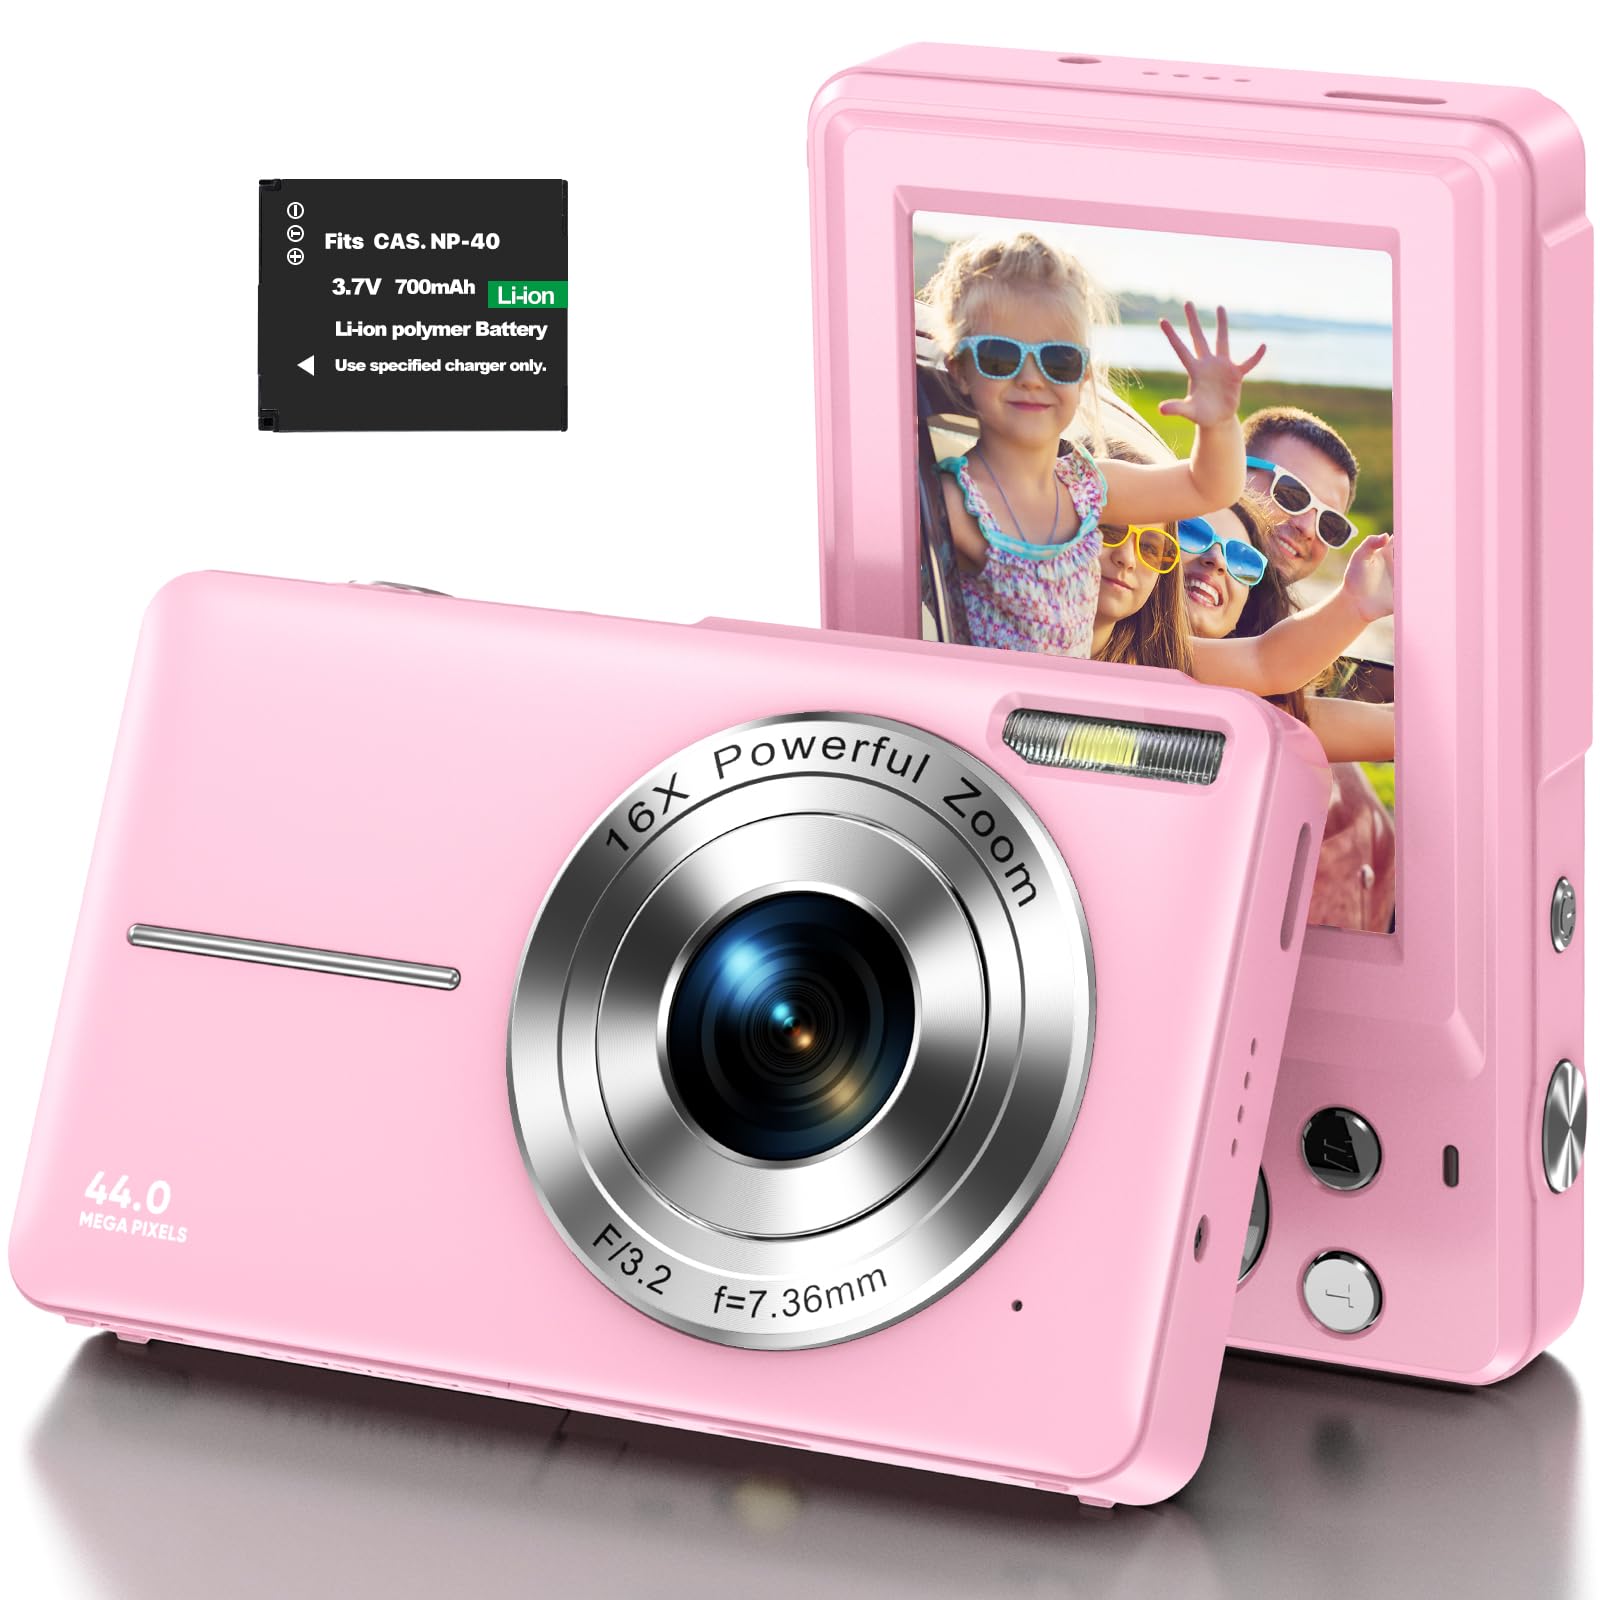 Digitalkamera 1080P Kinderkamera HD 44MP Fotokamera Kompaktkamera Fotoapparat Digitalkamera mit 2,4" LCD Bildschirm und 16X Digitalzoom für Kinder, Studenten, Anfänger-Rosa (1 Batterie ohne Karte)